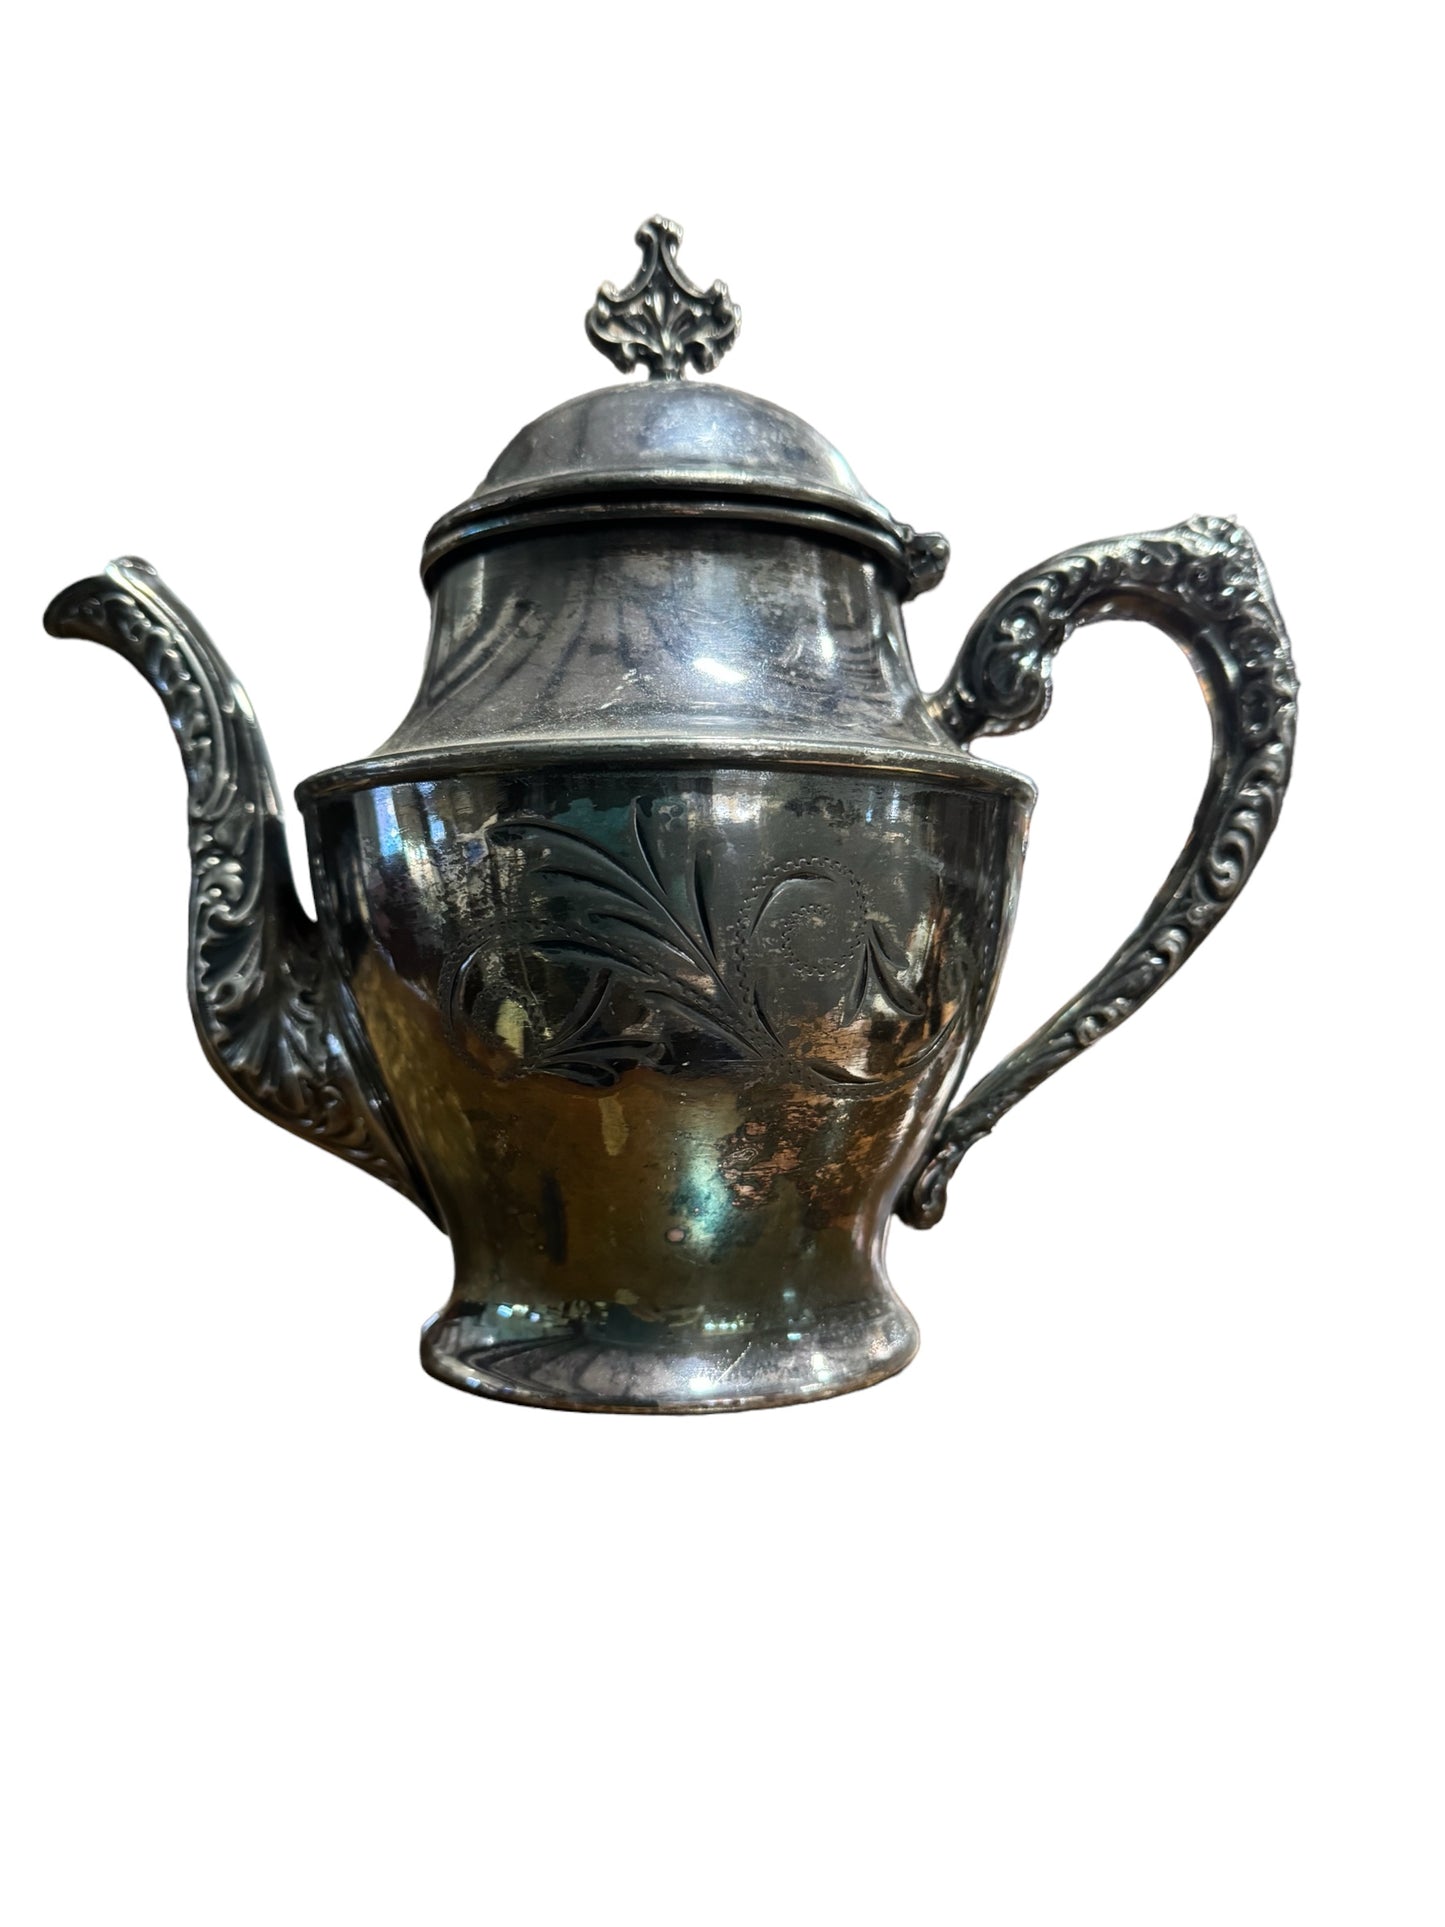 Antique Quadruple Silver Plate Etched Tea Pot by Richfield Plate Co